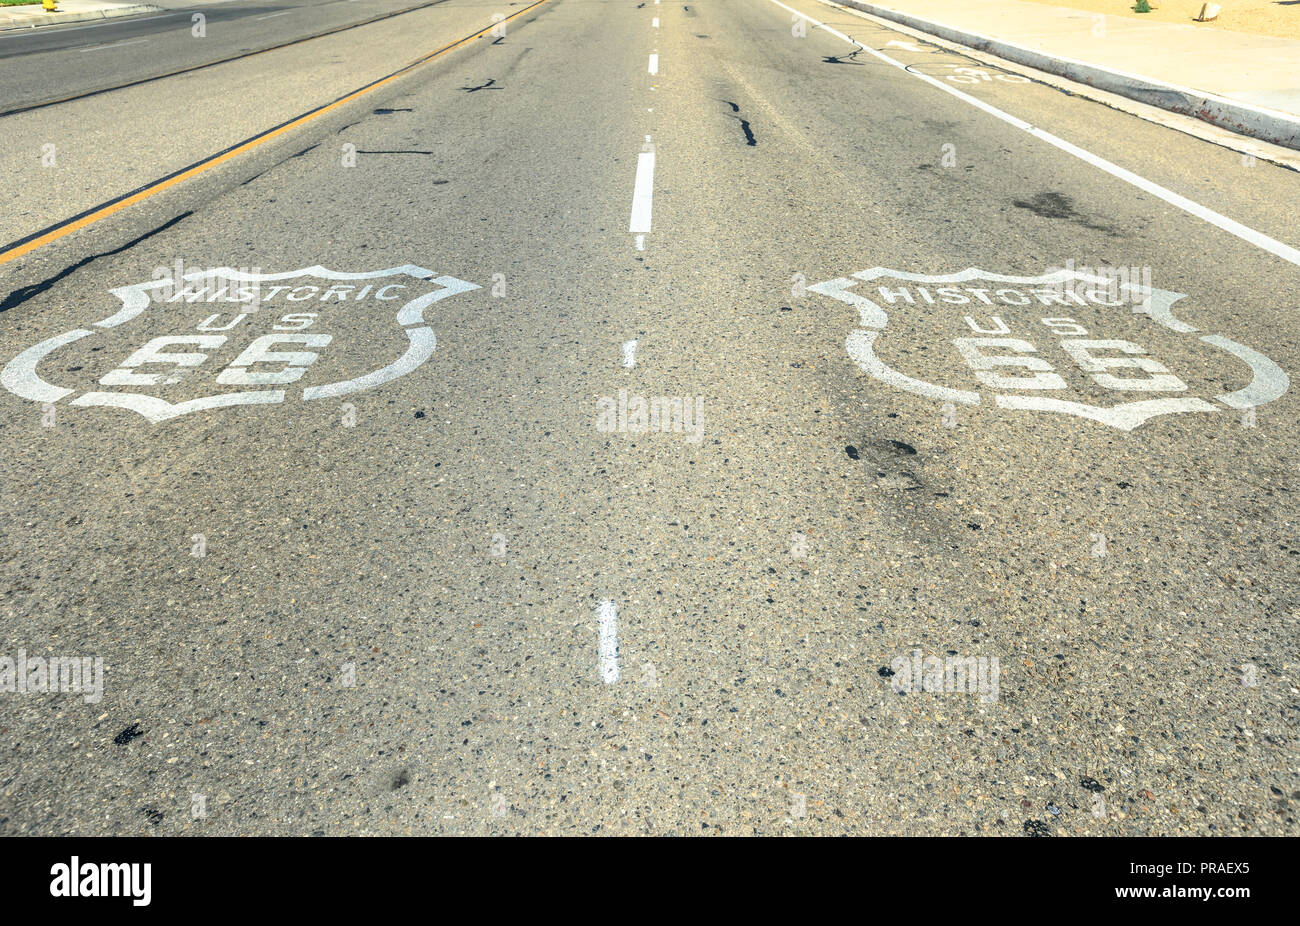 Pavimentazione strada segno sulla storica Route 66 in Barstow, Mojave Desert. Madre strada o sessanta sei sfondo. Route 66 autostrada con segno su asfalto. Foto Stock